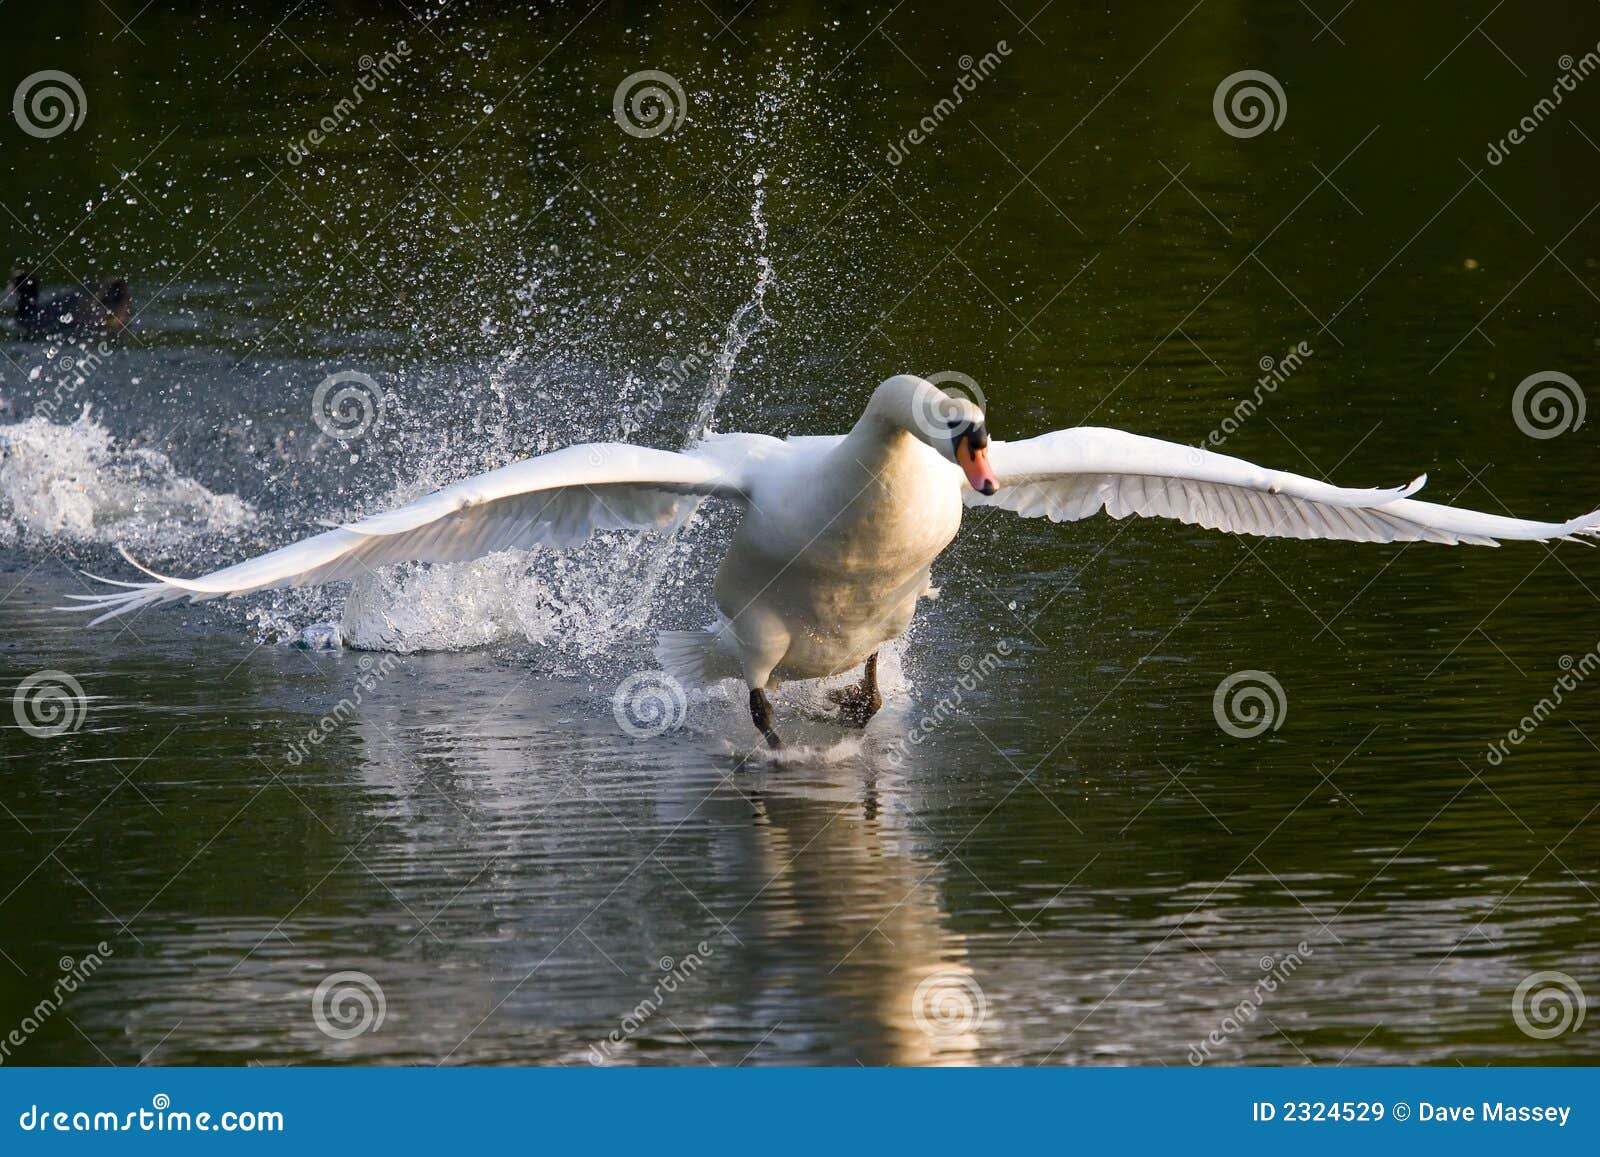 swan take off